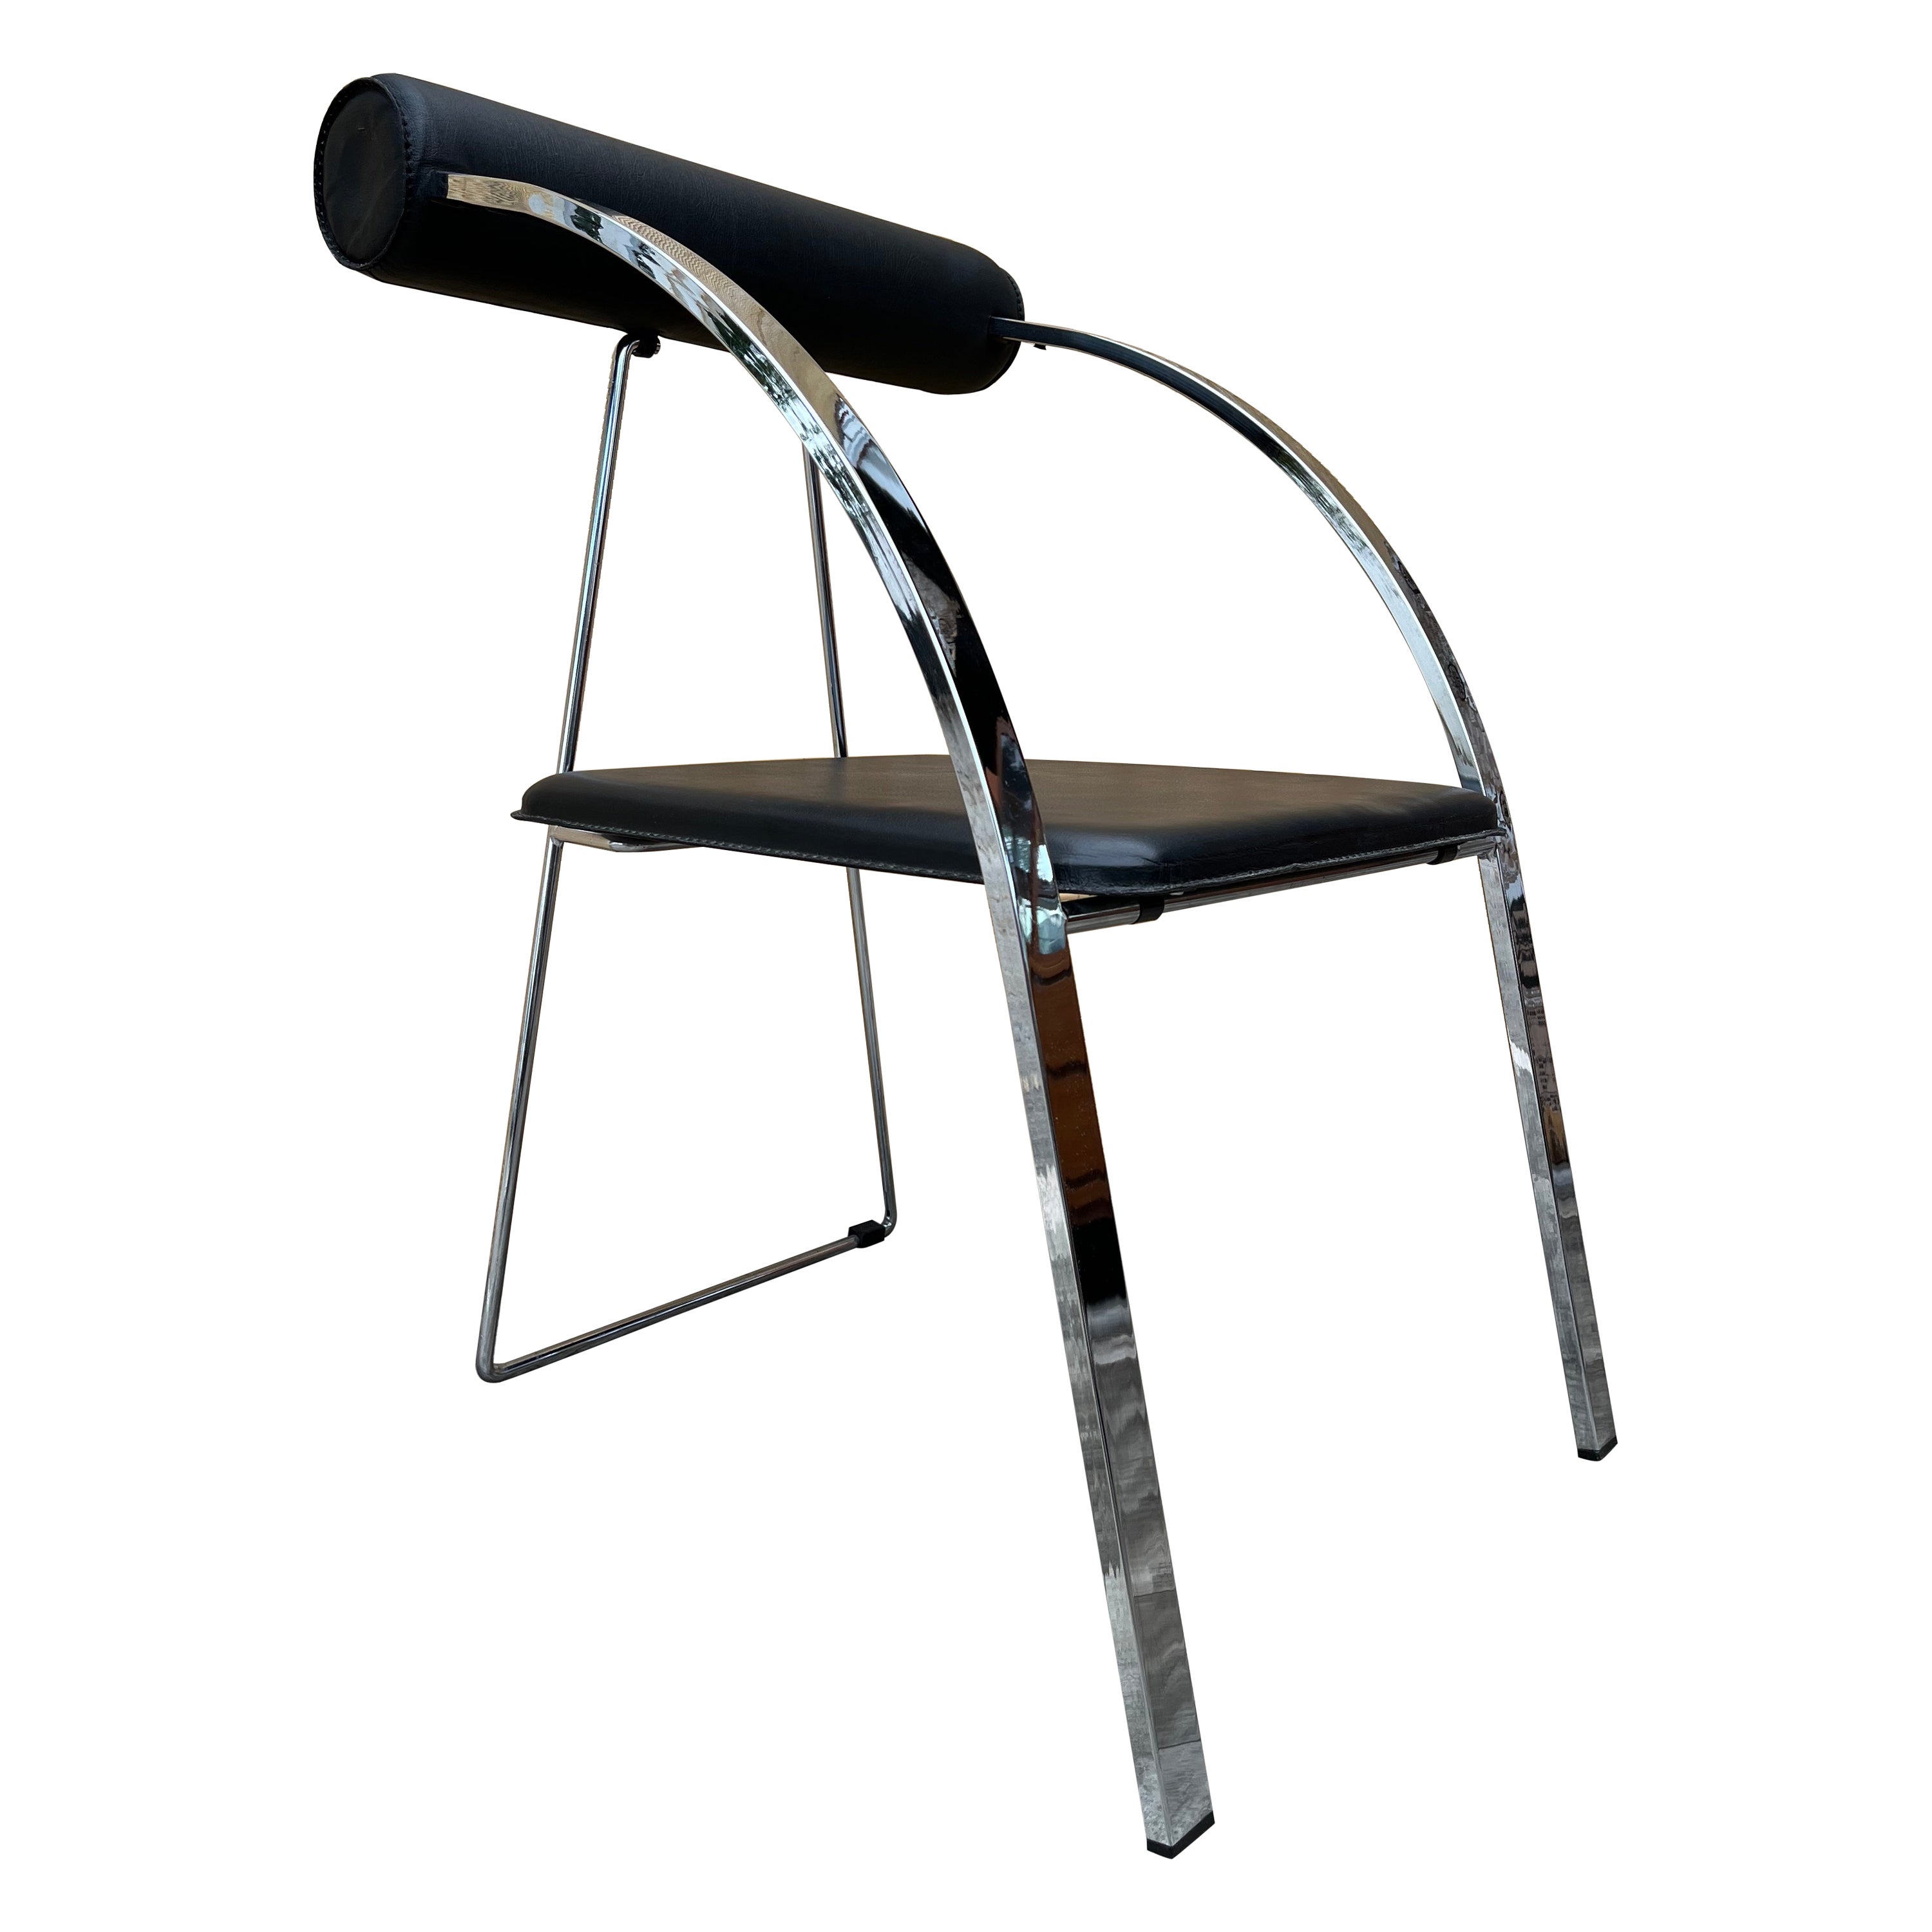 Postmoderner klappbarer Stuhl im Stil von Rodney Kinsman aus den 1990er Jahren.